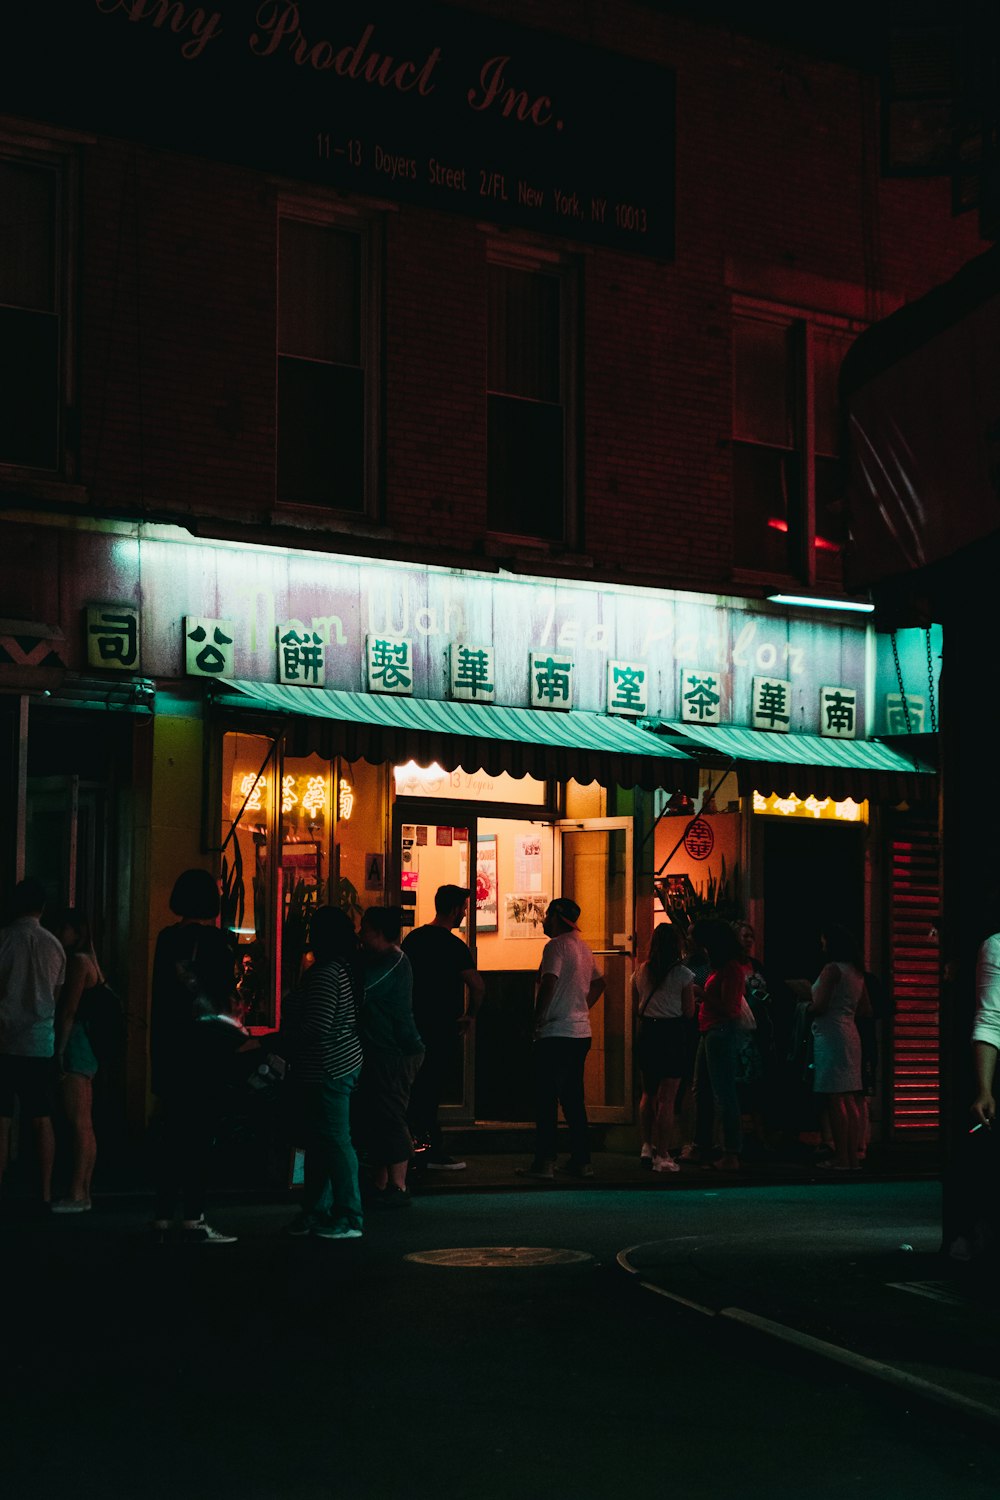 persone in piedi davanti al negozio durante la notte